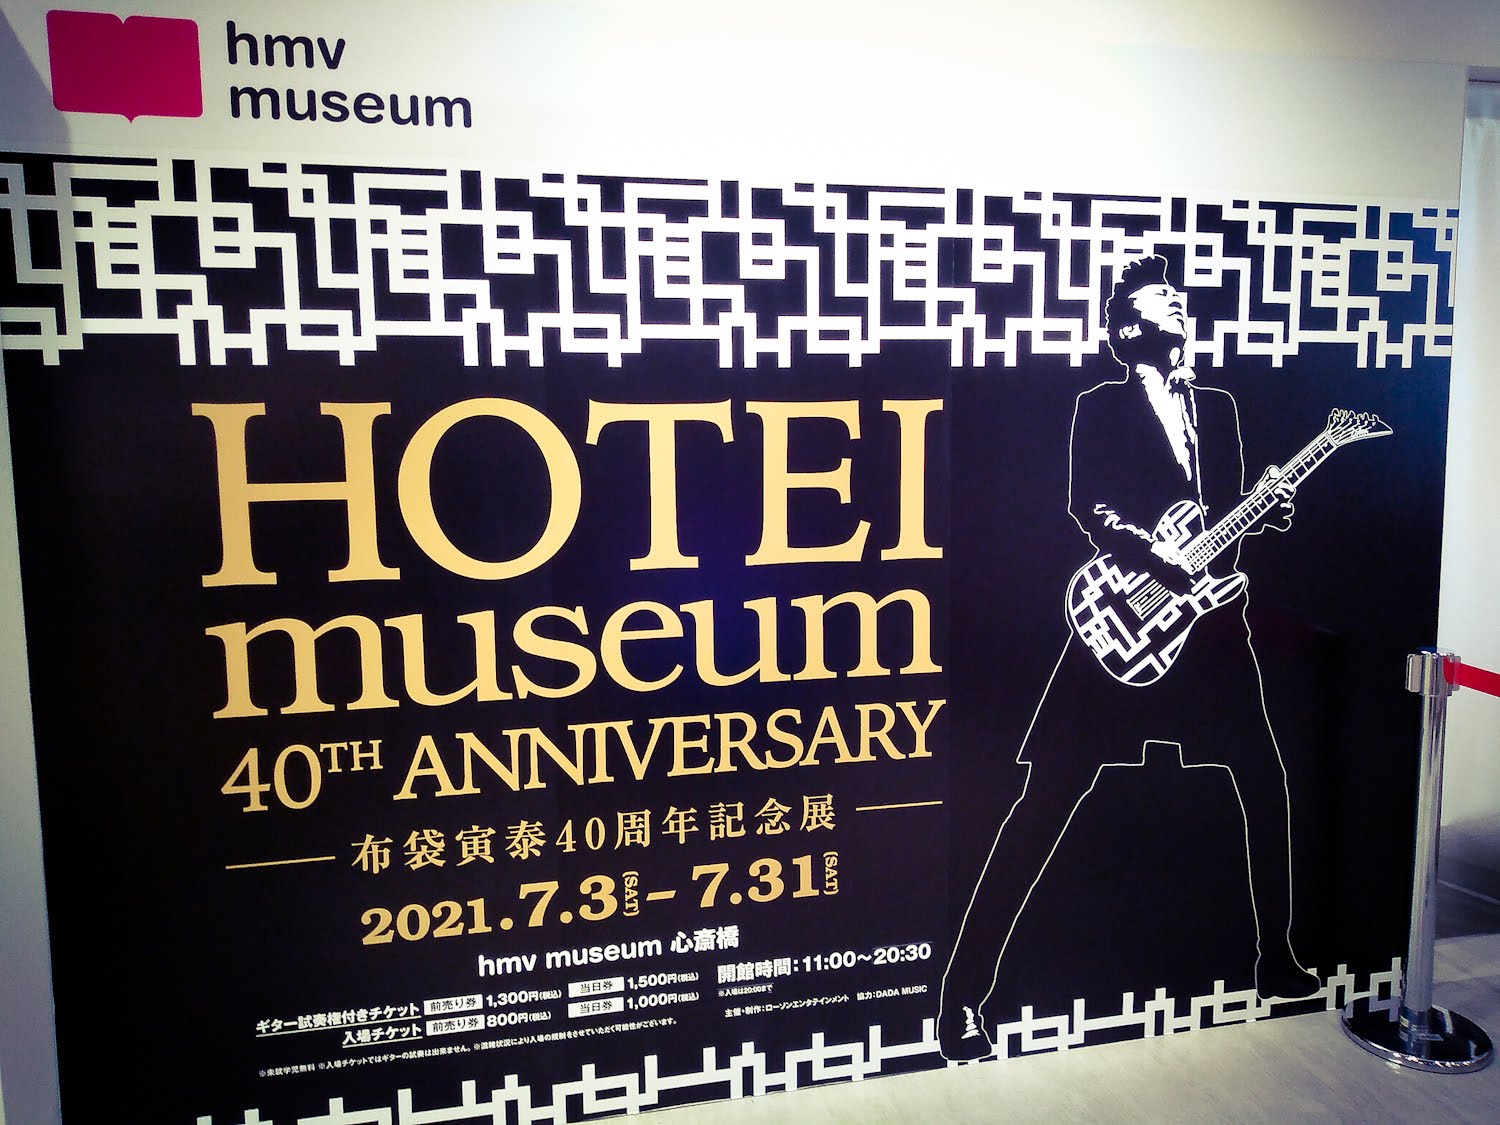 Hotei Museum 40th Anniversary 布袋寅泰40周年記念展 に行ってきた サラリーマンのポルシェ購入ブログ